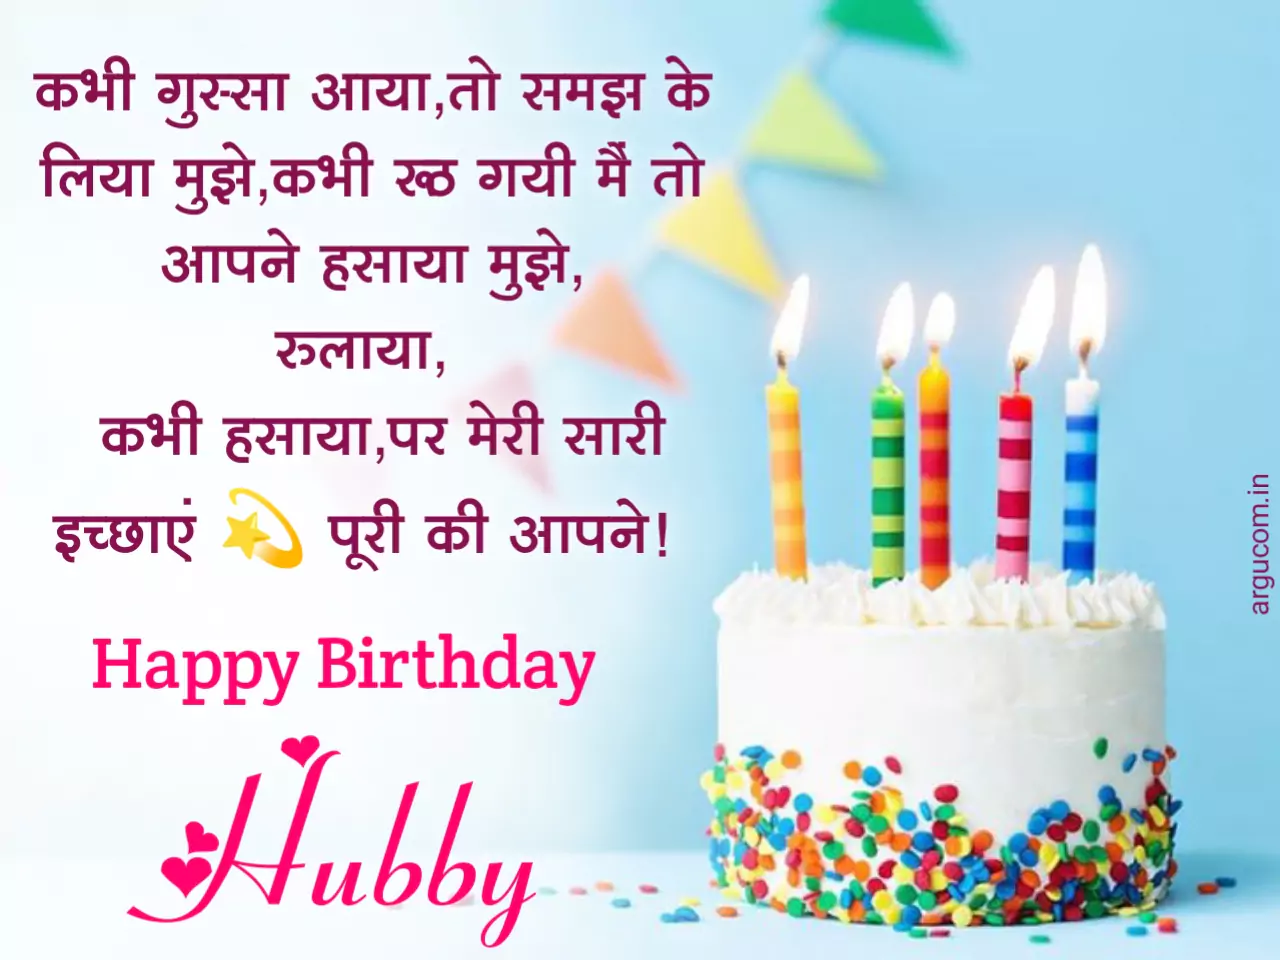 Happy birthday images for husband in hindi , पति को जन्मदिन की शुभकामनाएं